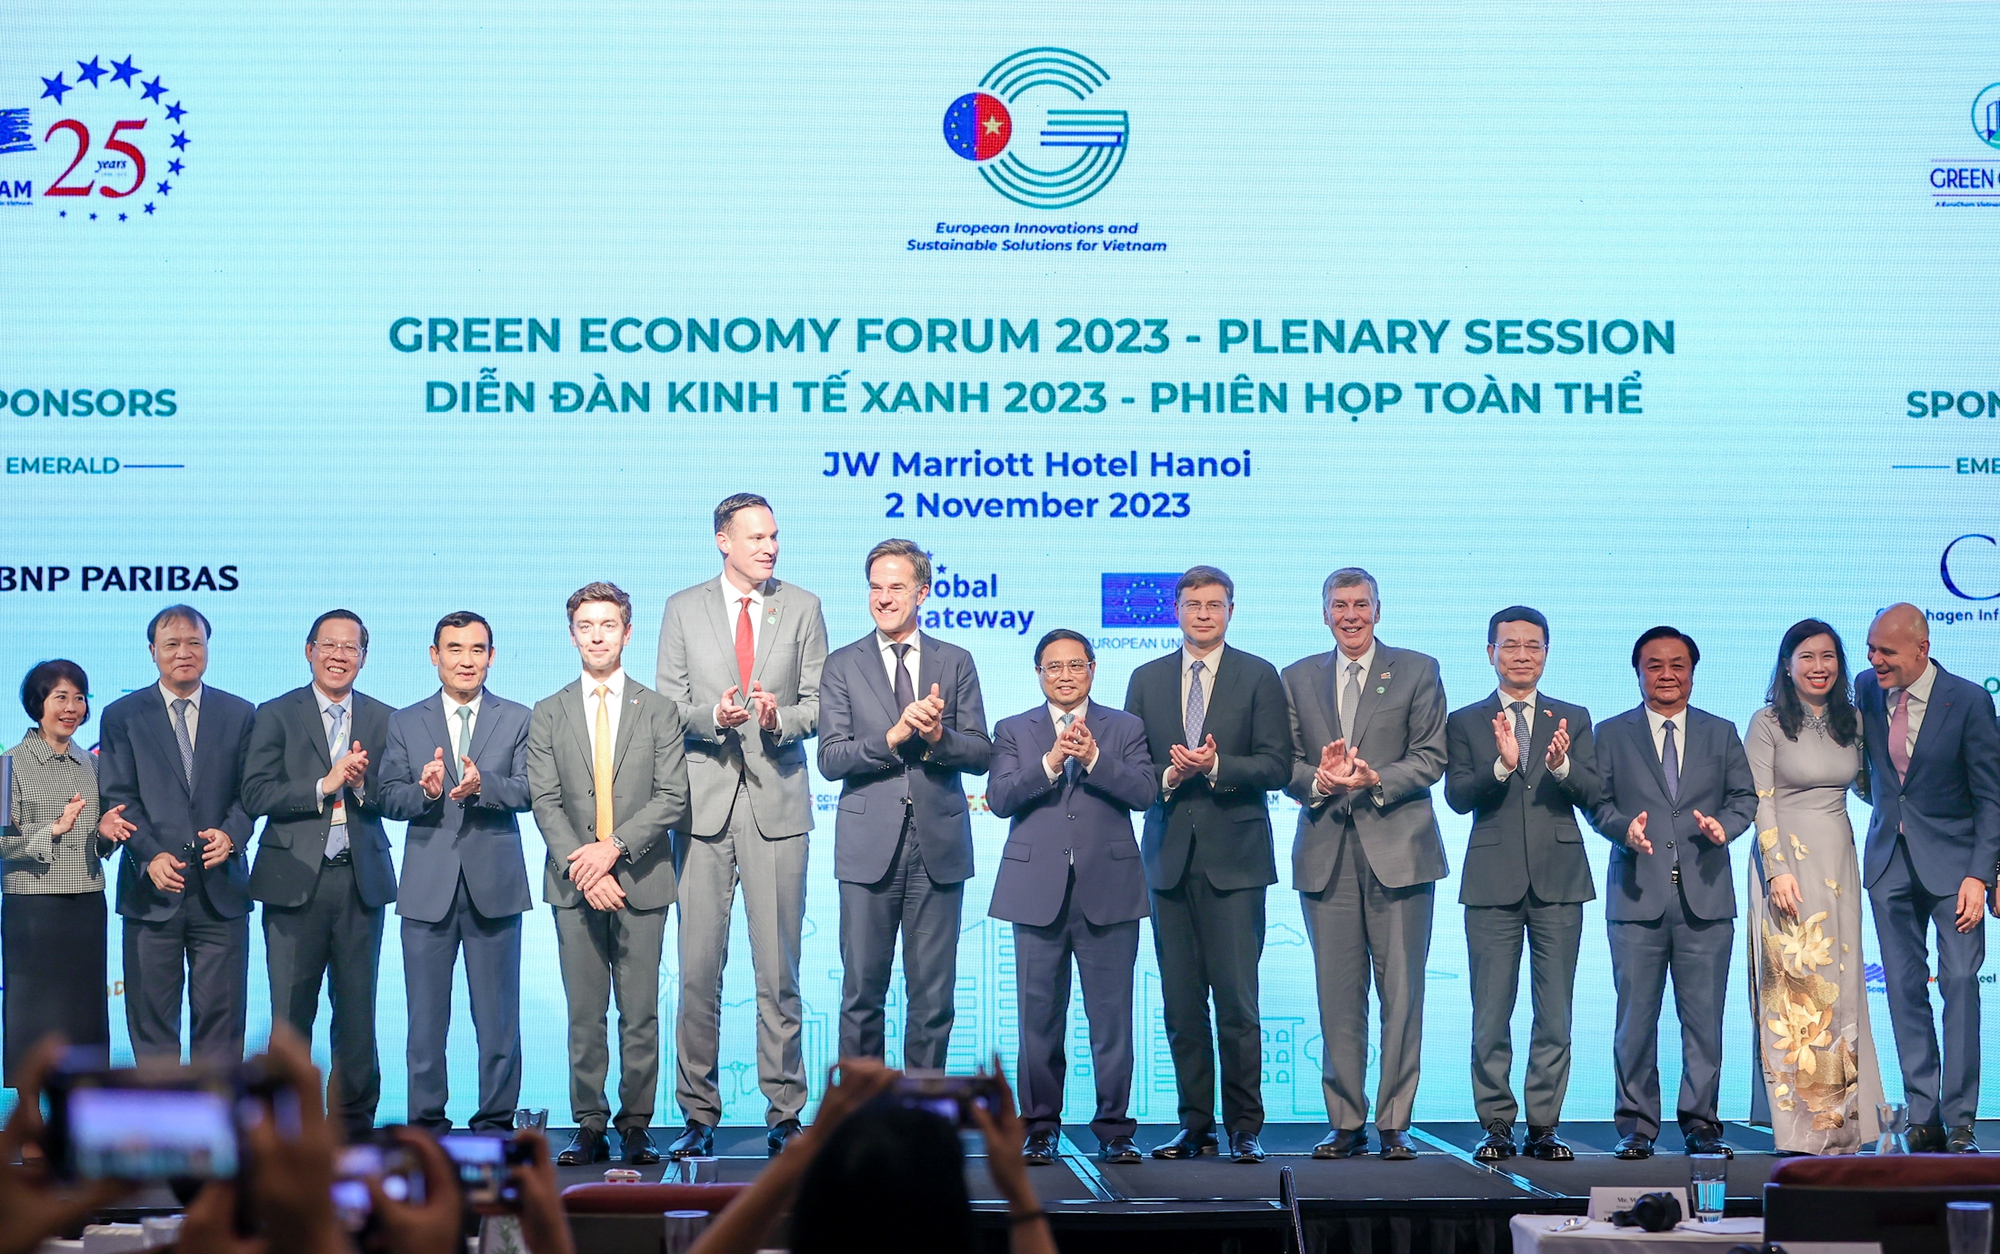 Diễn đàn Kinh tế Xanh 2023: Nâng cao năng lực bền vững của Việt Nam, tăng cường hợp tác với EU thúc đẩy sáng kiến xanh